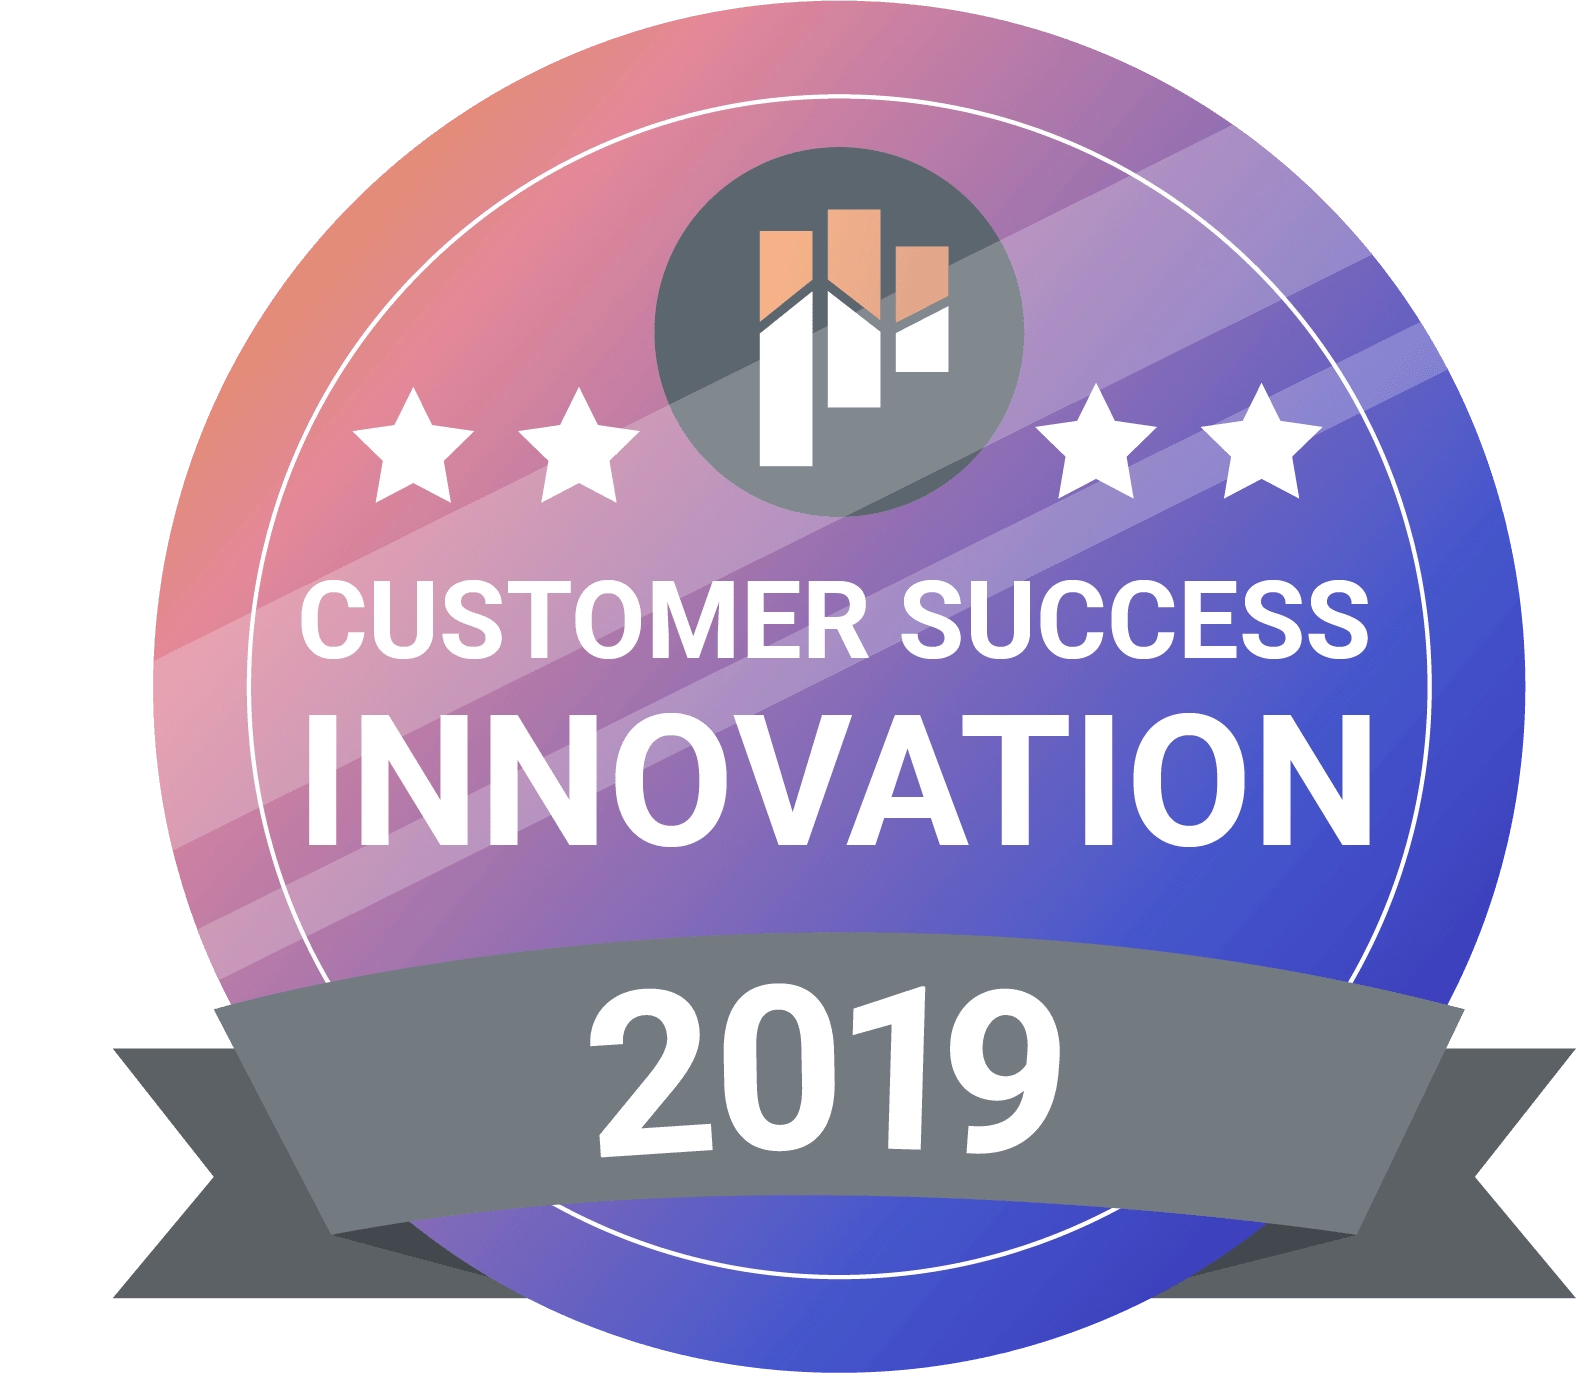 Customer Success Innovation 2019 award